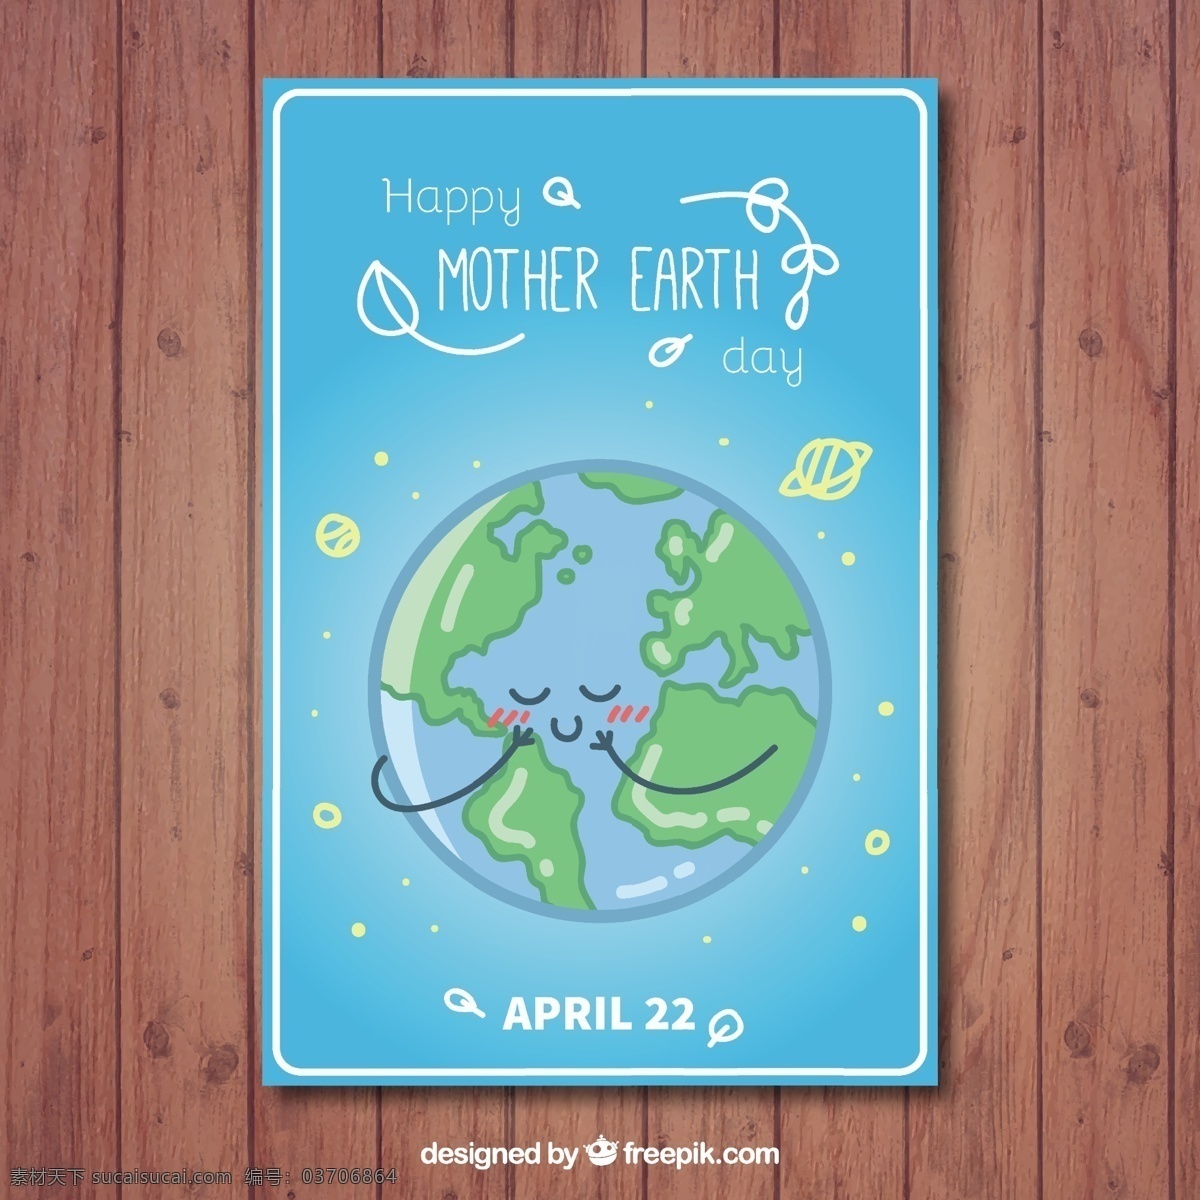 美好 地球日 手册 宣传册 传单 卡片 封面 模板 叶 宣传册模板 地球 母亲 文具 传单模板 生态 有机 小册子 环境 文件 发展 网页